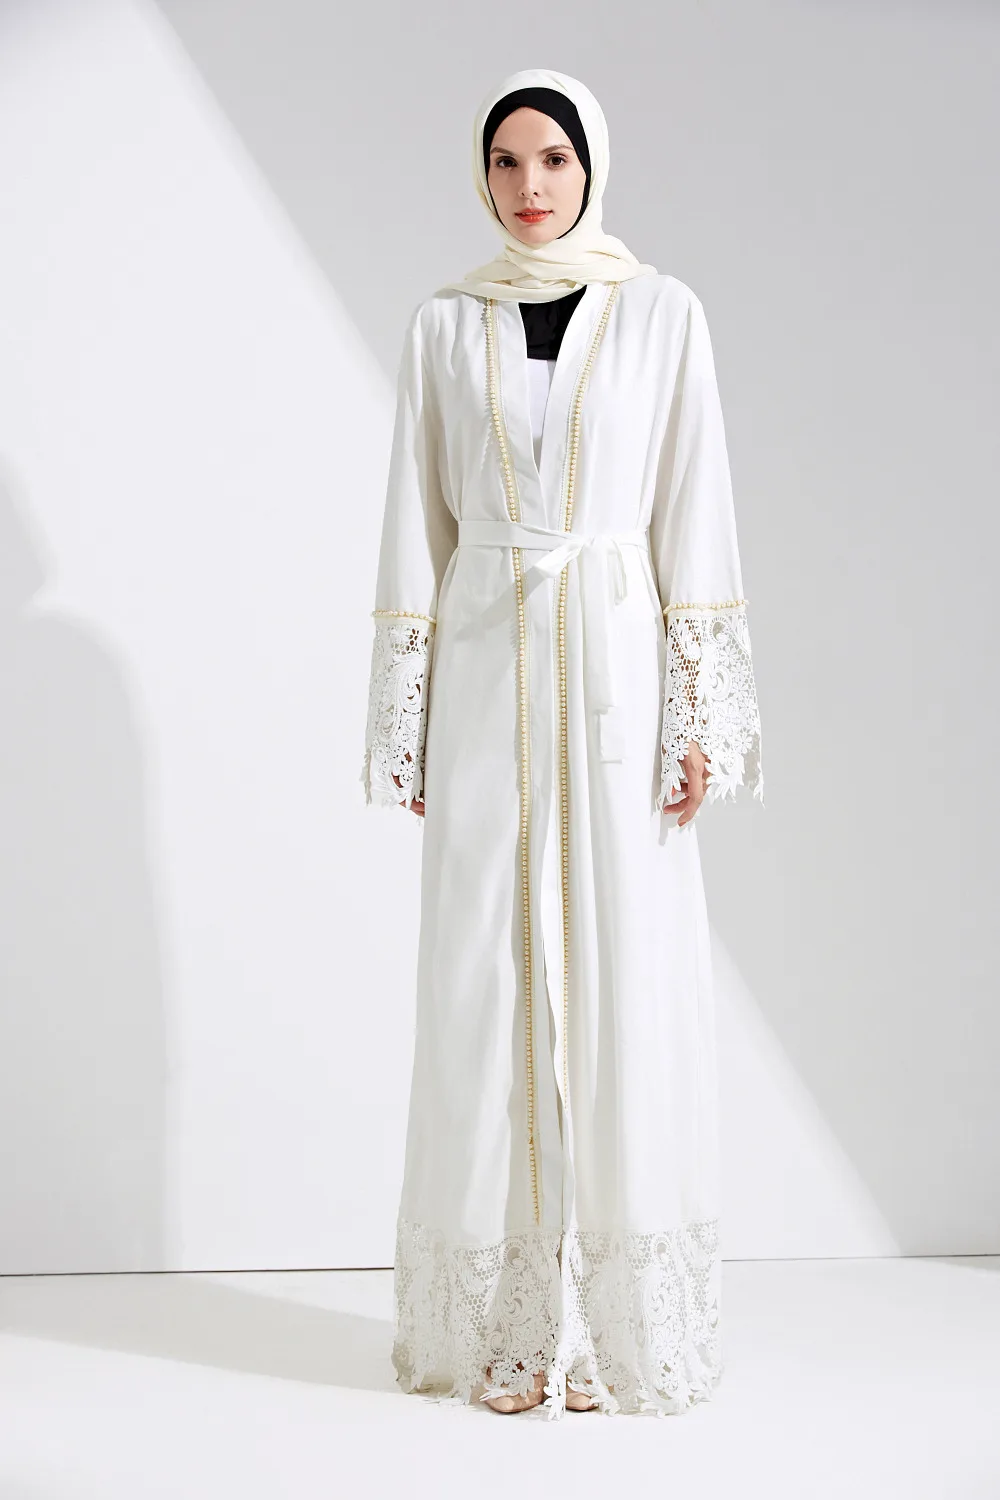 Женский элегантный скромный мусульманский костюм арабский длинный рукав полная длина жемчуг кружева подол белый абайя платье с поясом D273